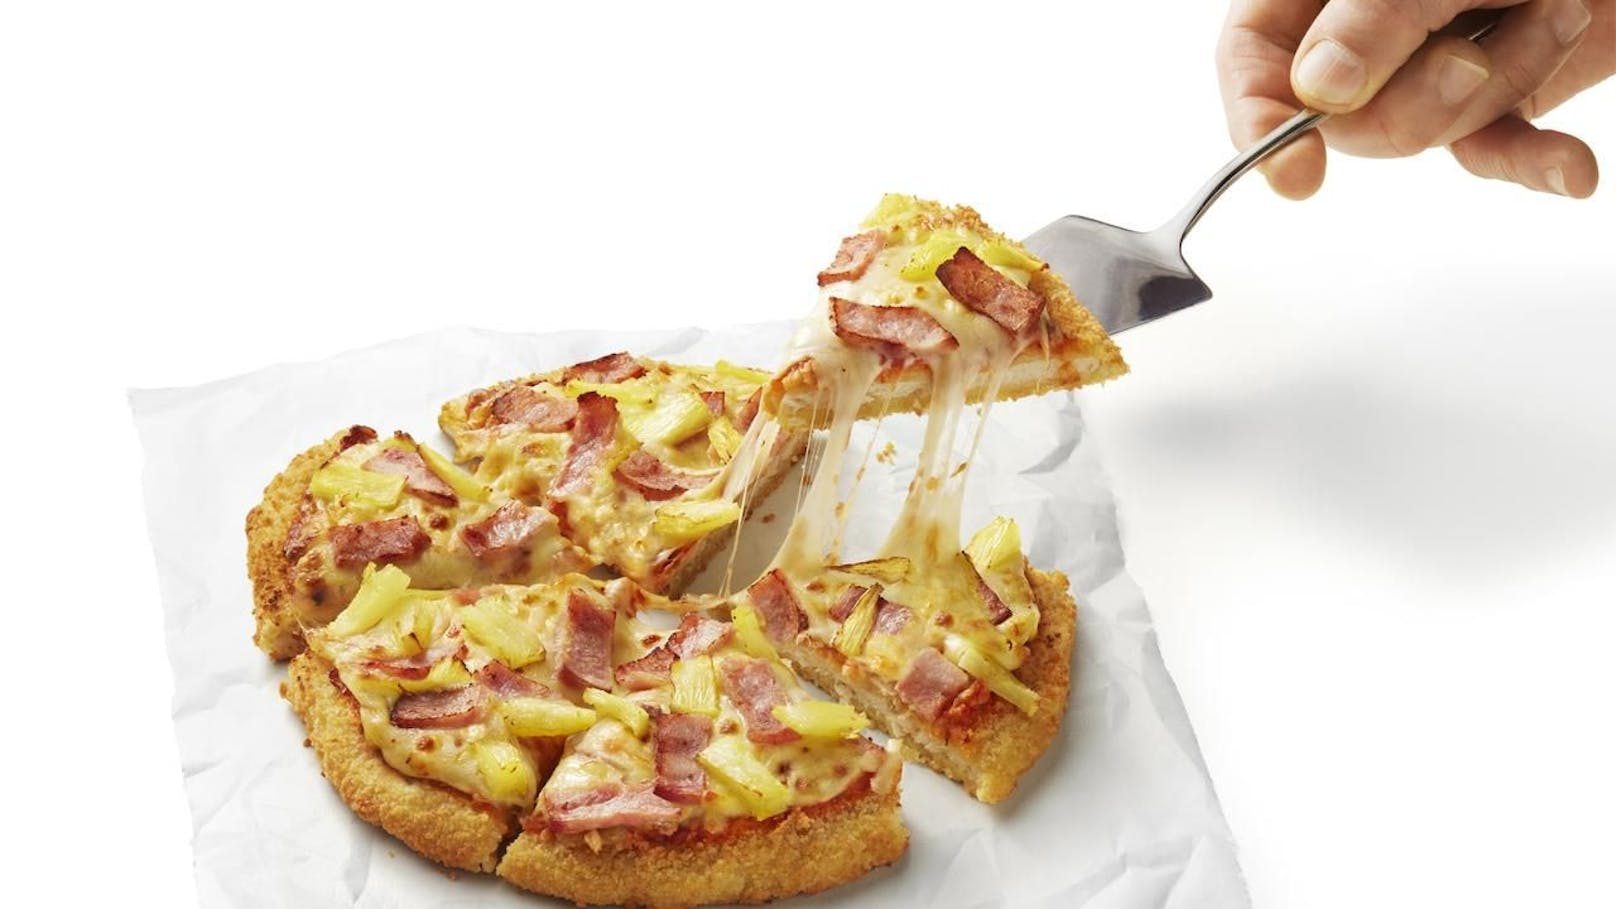 Bei "Schnitzza" handelt es sich um ein kreisrundes Schnitzel mit Pizza-Belag.